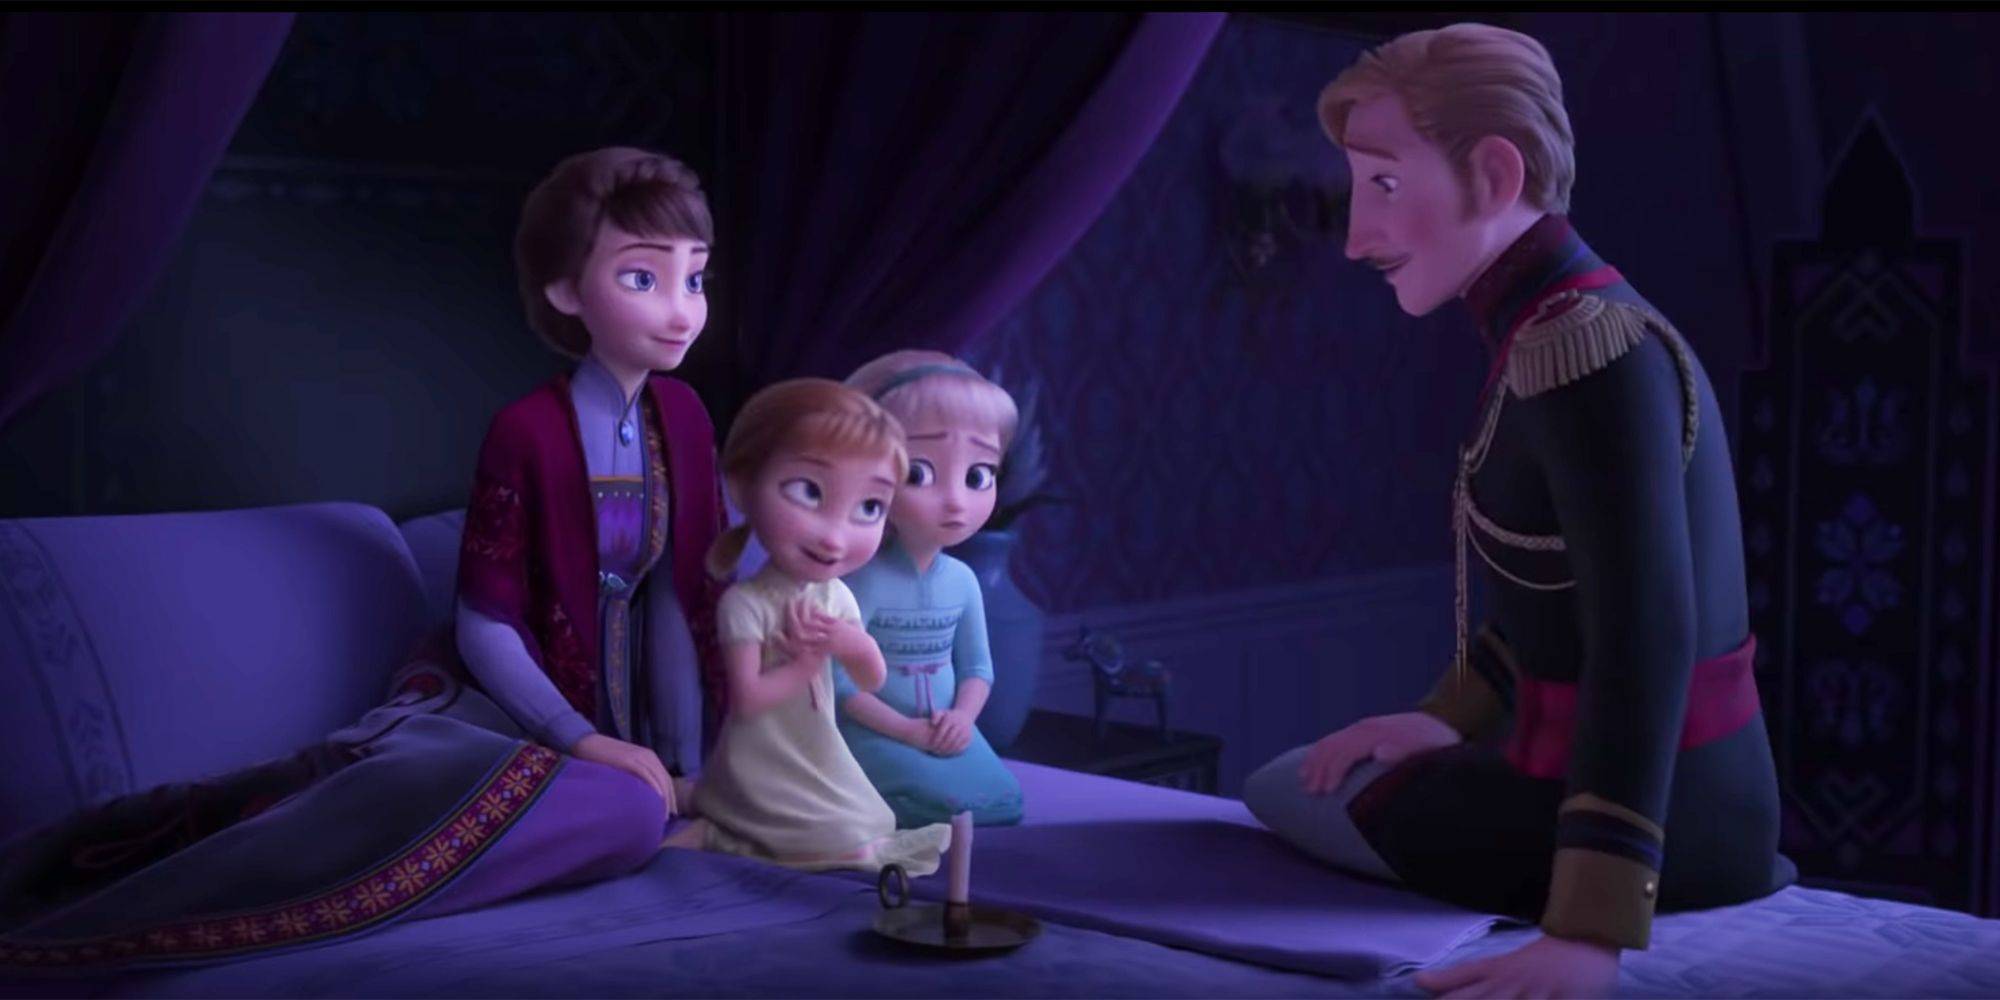 La trama di Frozen 2 inizia da questa scena in cui le bambine sentono la storia del padre.